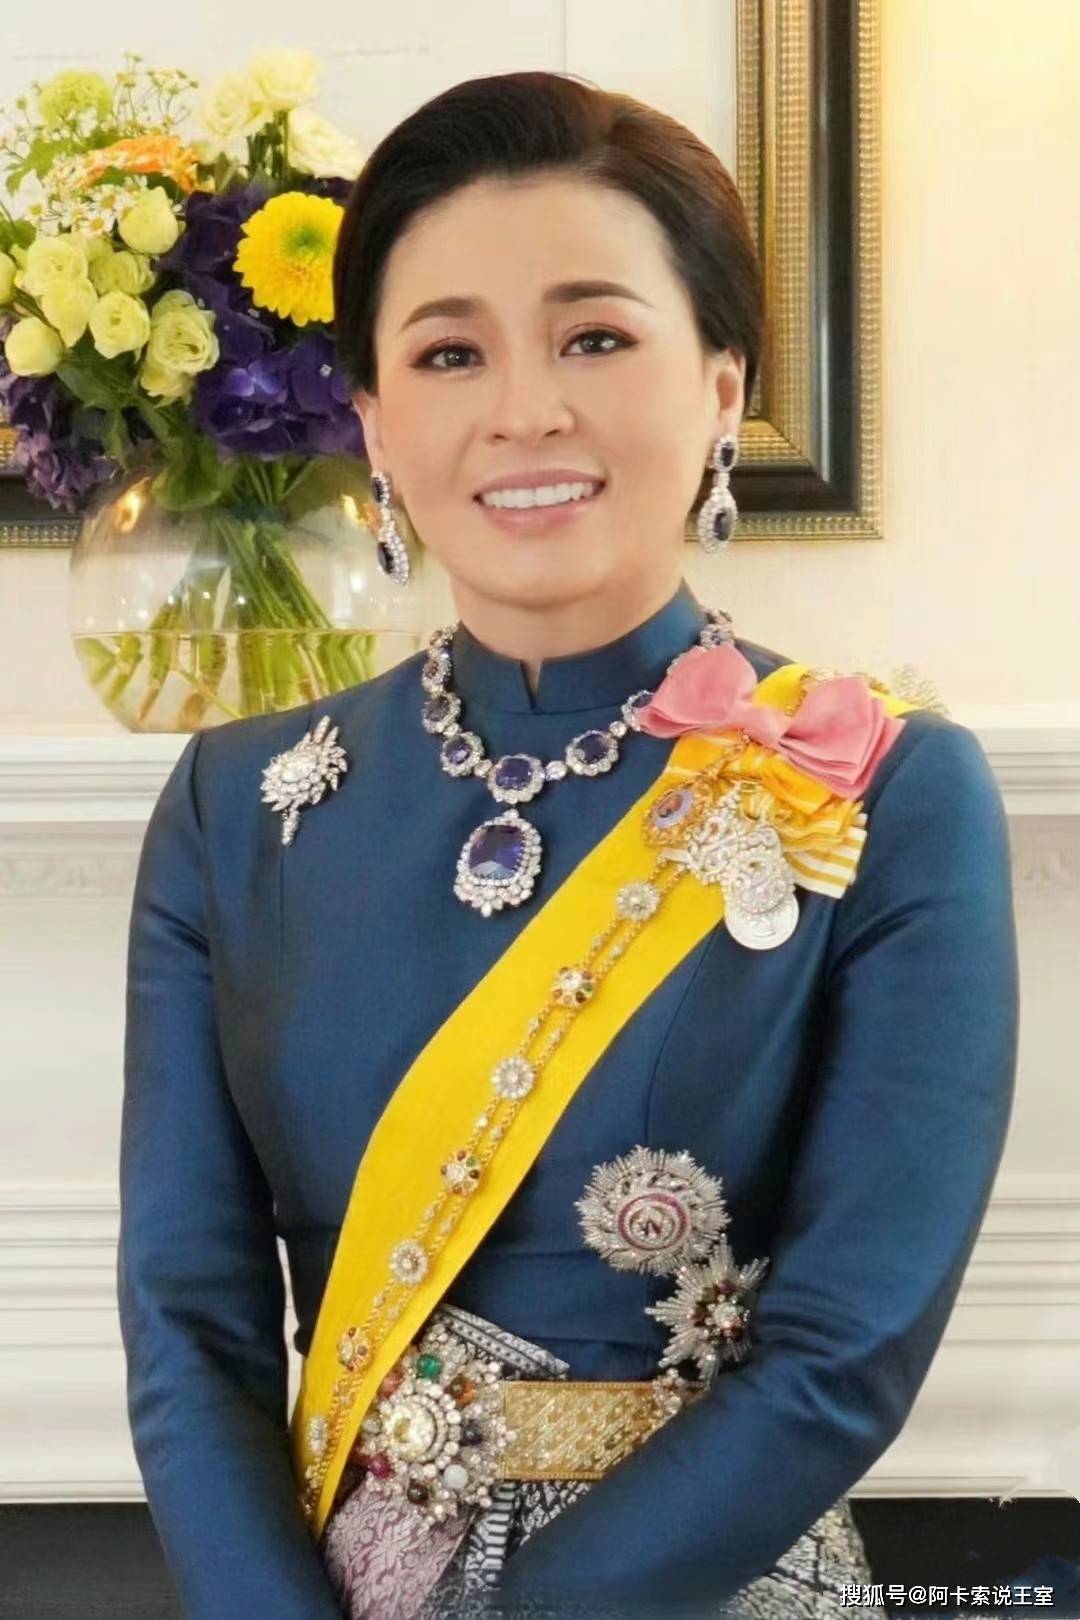 泰国王后苏提达贵为王后,却在后宫低调行事,从西拉米人生中吸取登高跌